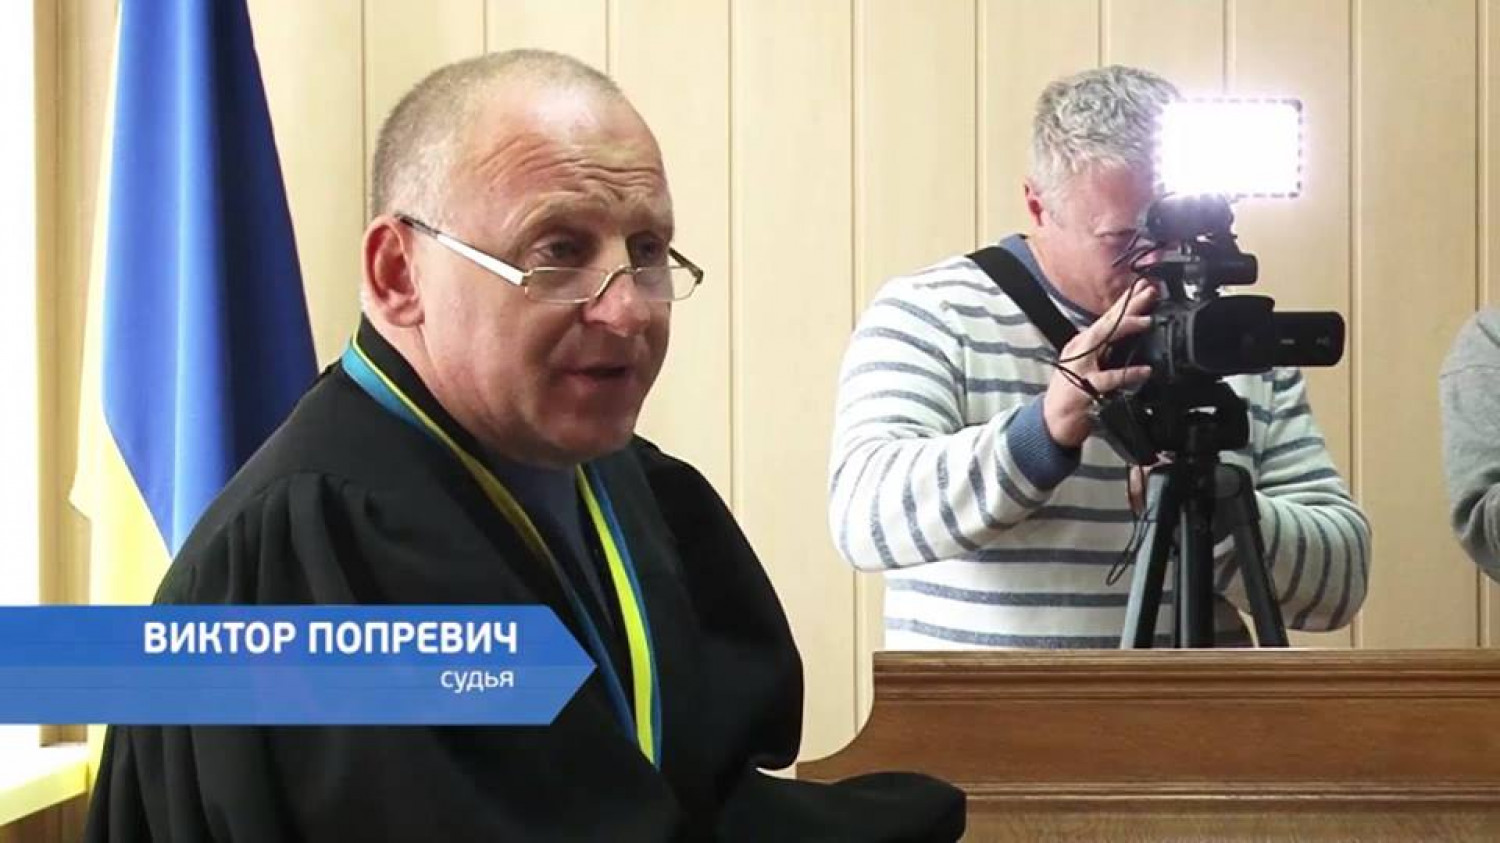 Семь лет тюрьмы: что известно о судье, который вынес приговор Стерненко - фото 2